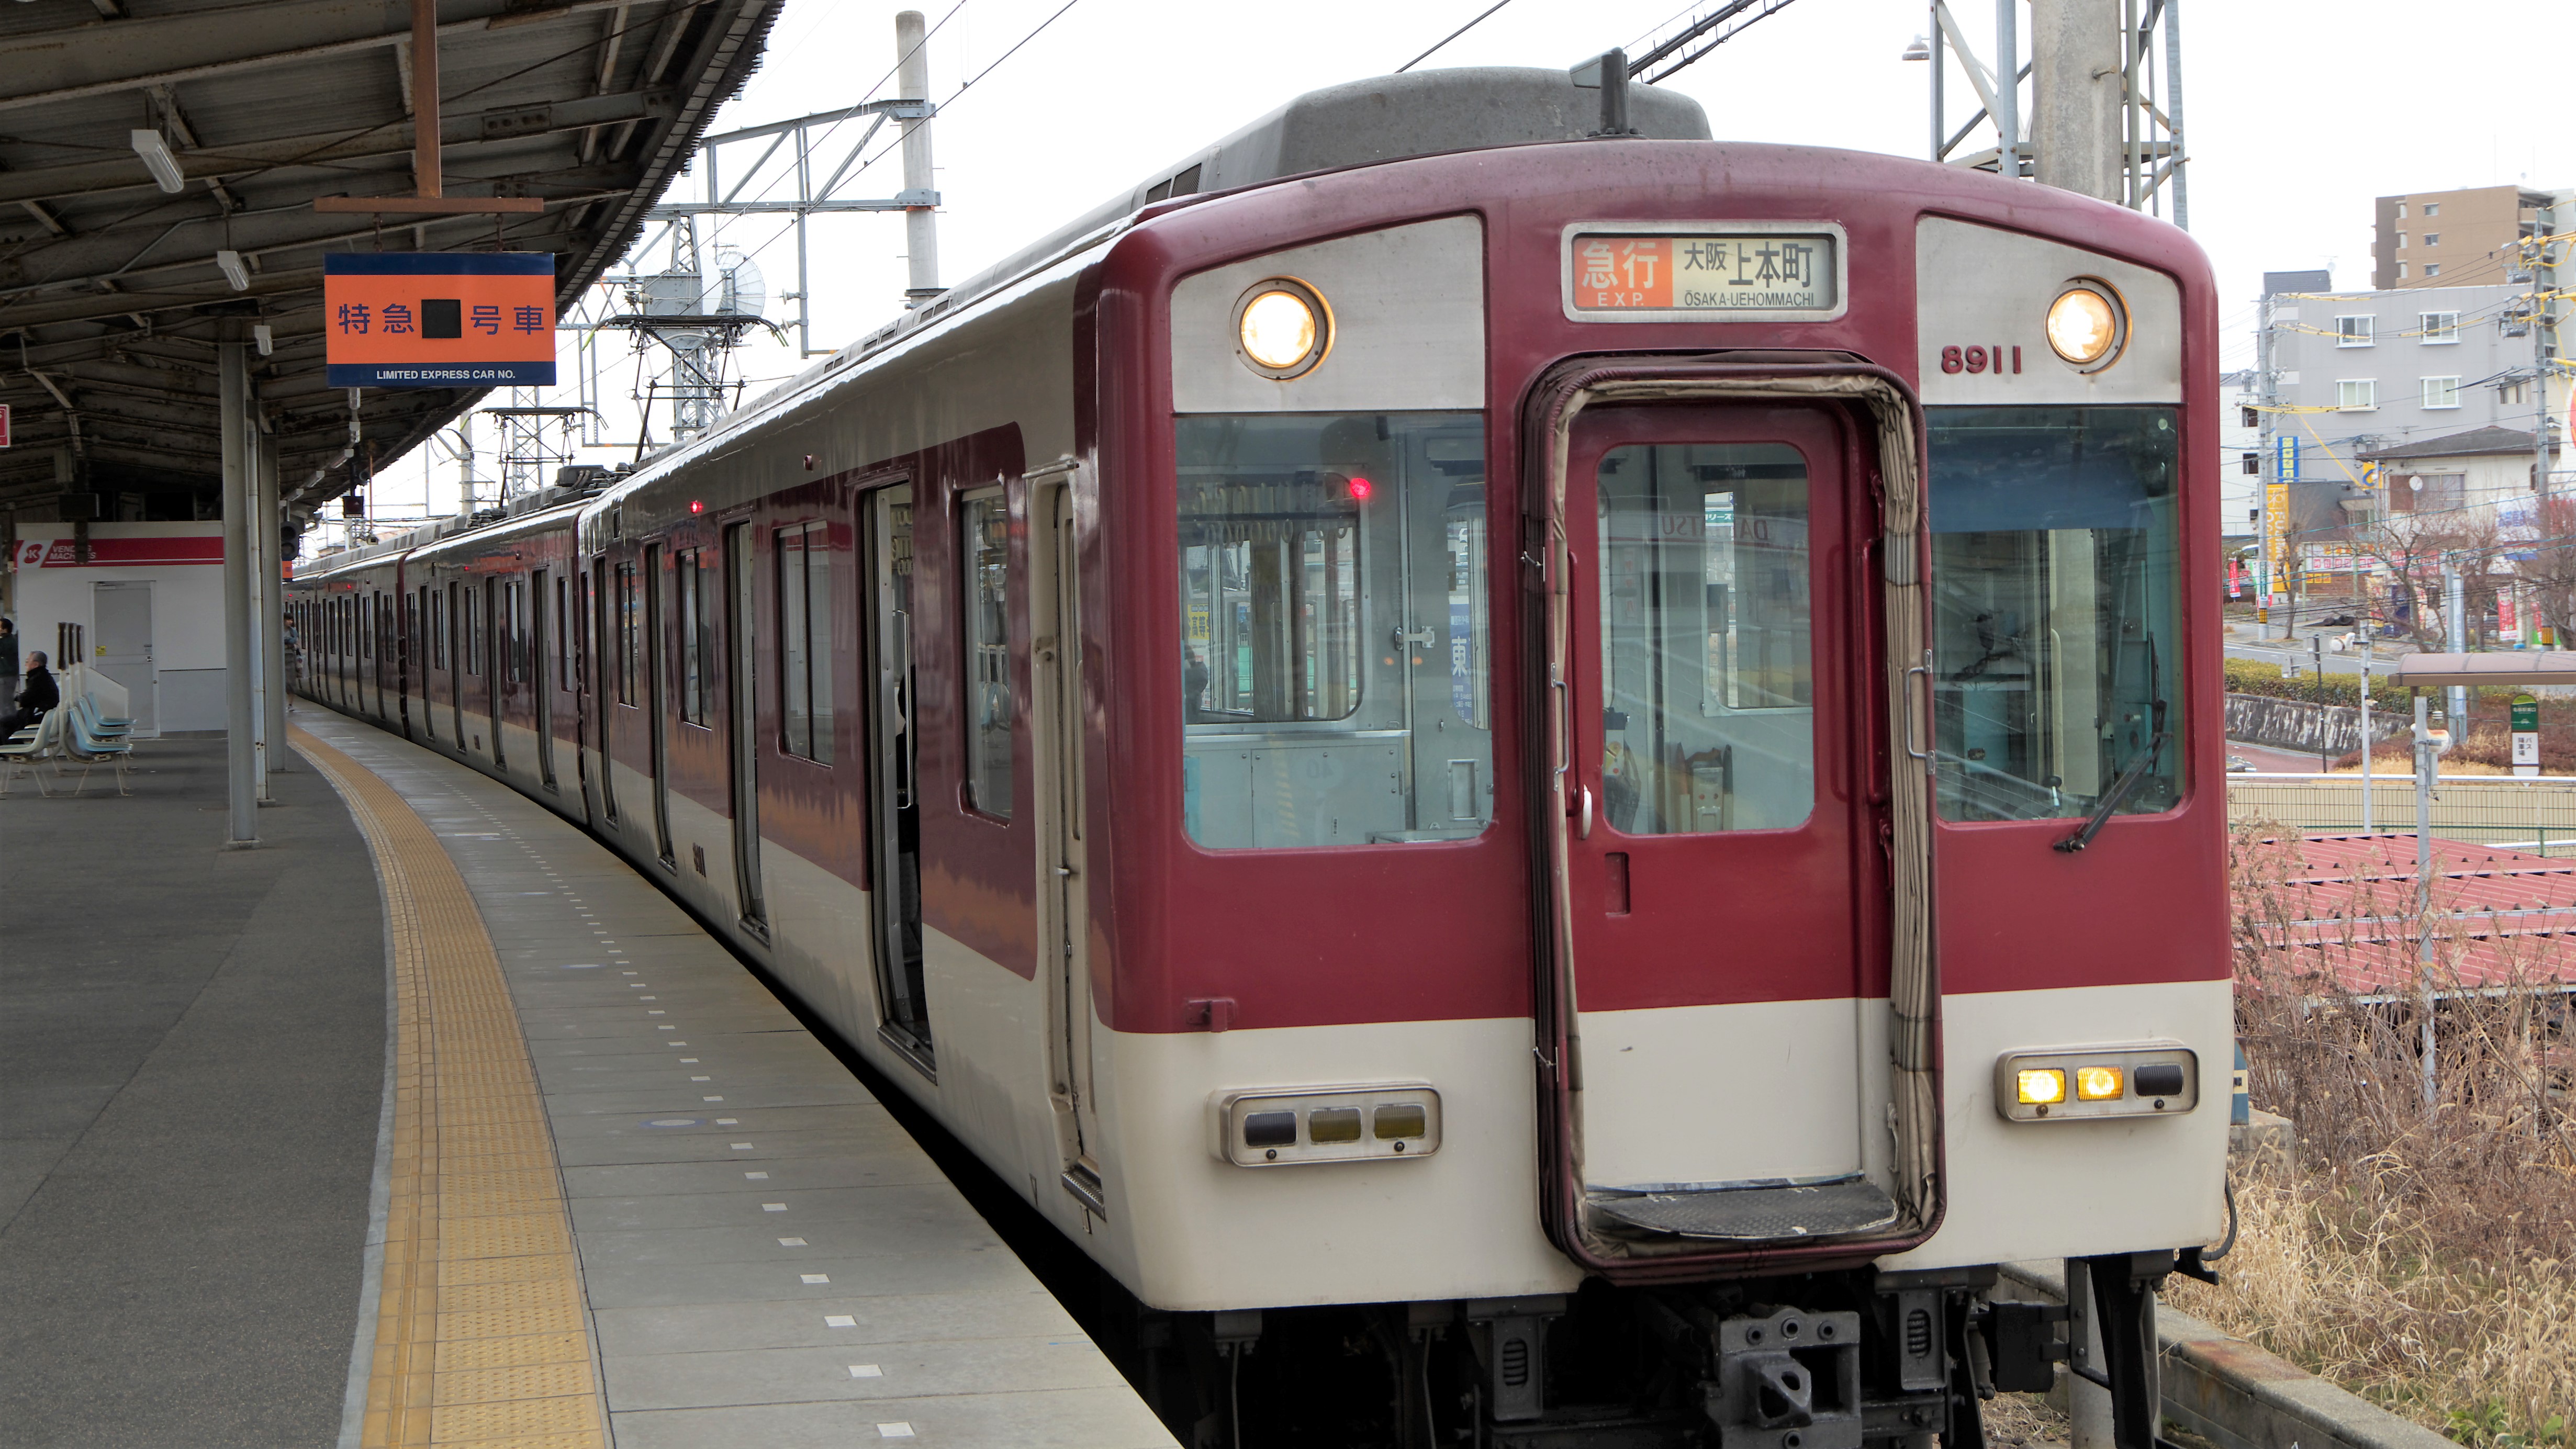 18きっぷより安い 近鉄の鈍行で名古屋から大阪へ移動した記録